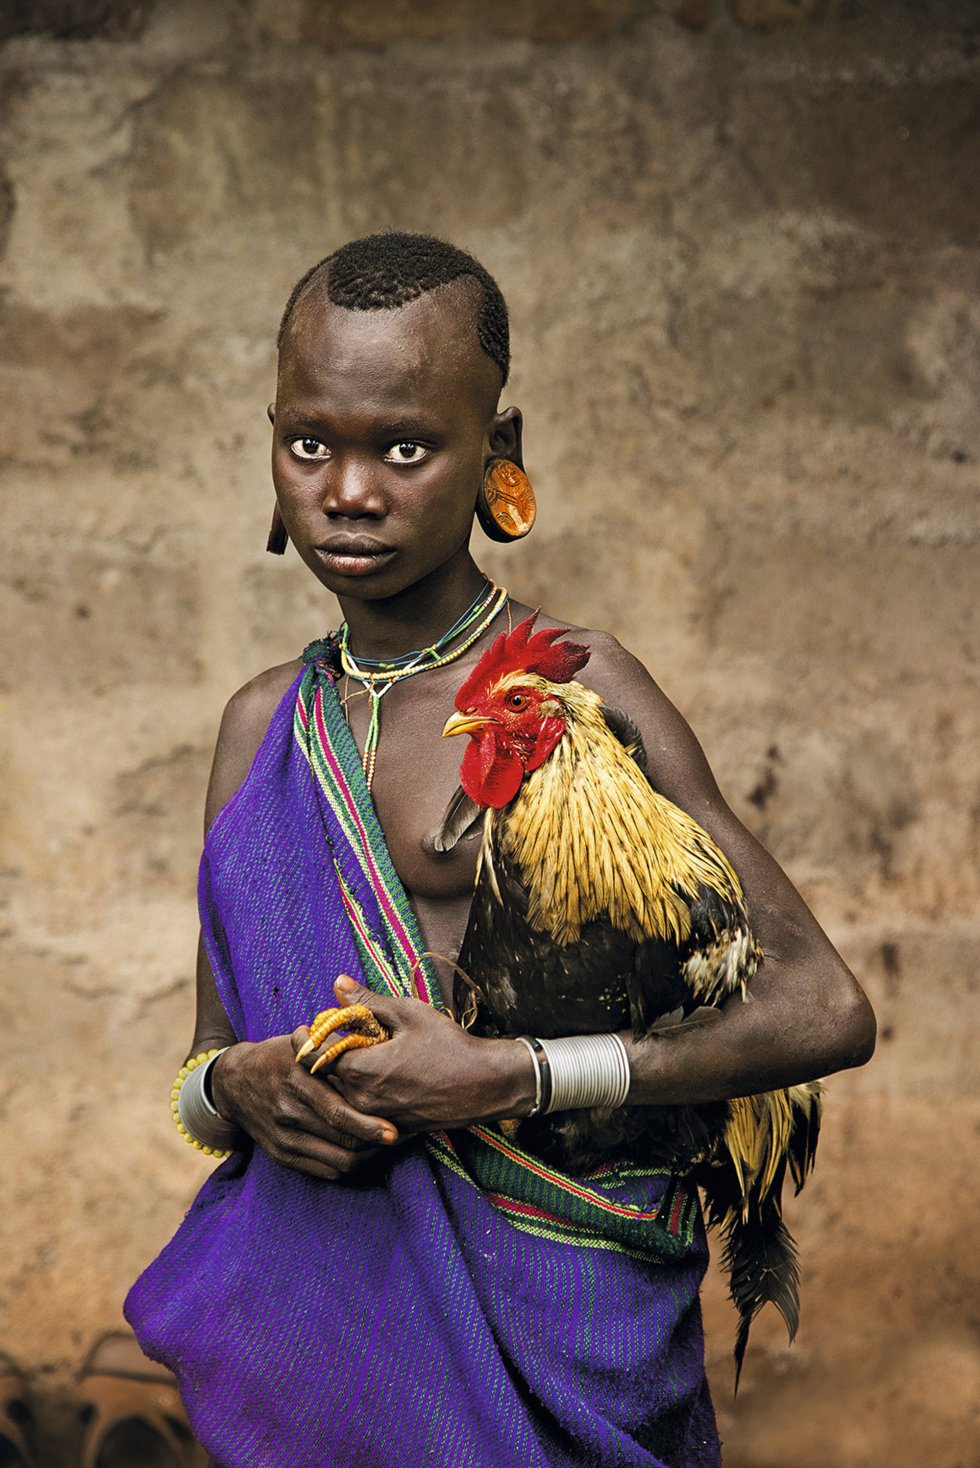 Una niña de la tribu kara del valle del Omo (Etiopía) sostiene un gallo. Las garras del animal asoman, pacíficas, entre las manos de la pequeña. Año 2013.